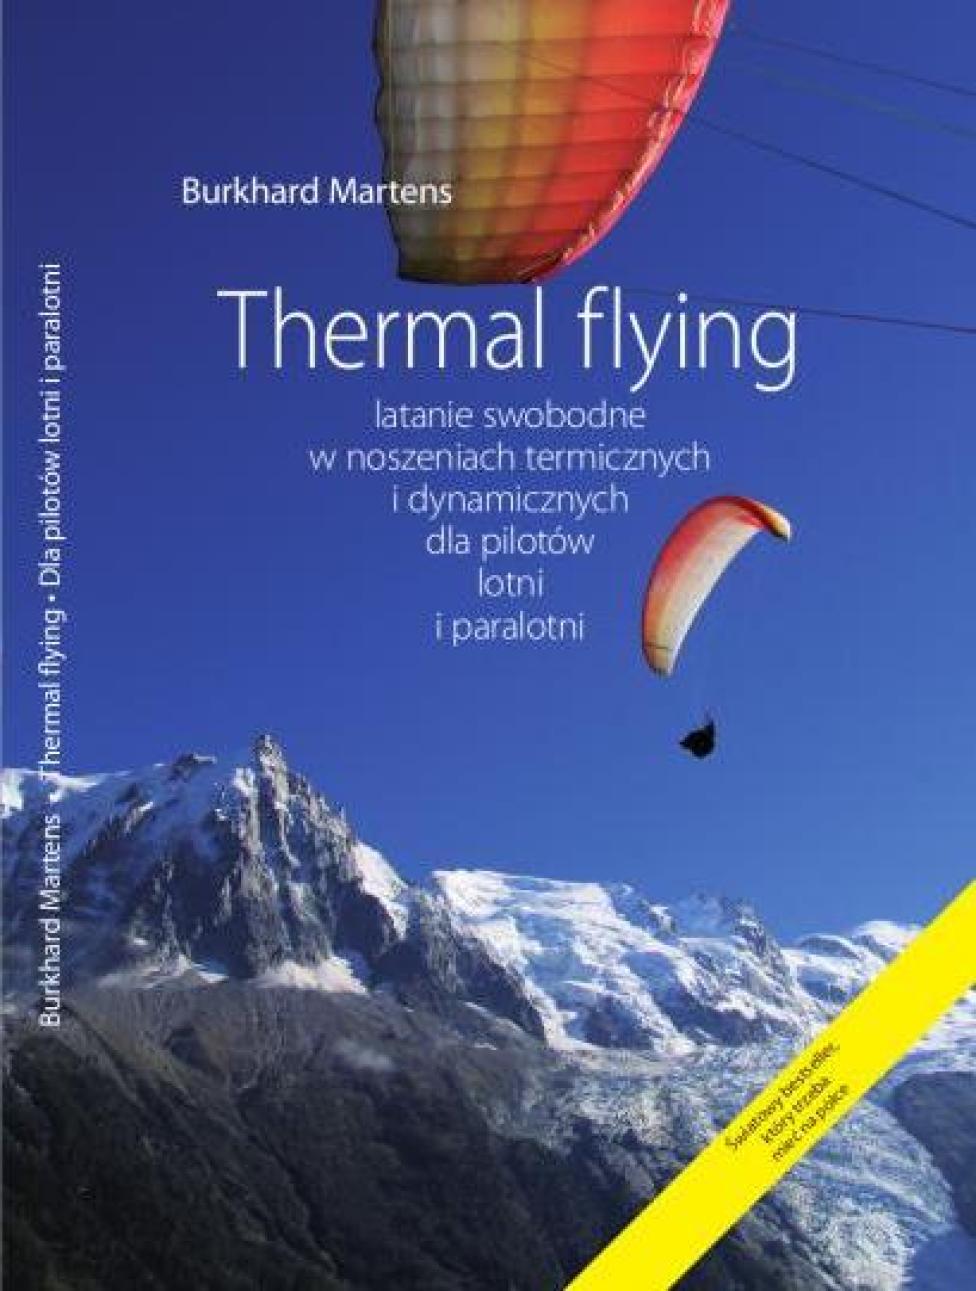 Książka "Thermal Flying – latanie swobodne w noszeniach termicznych i dynamicznych dla pilotów lotni i paralotni"